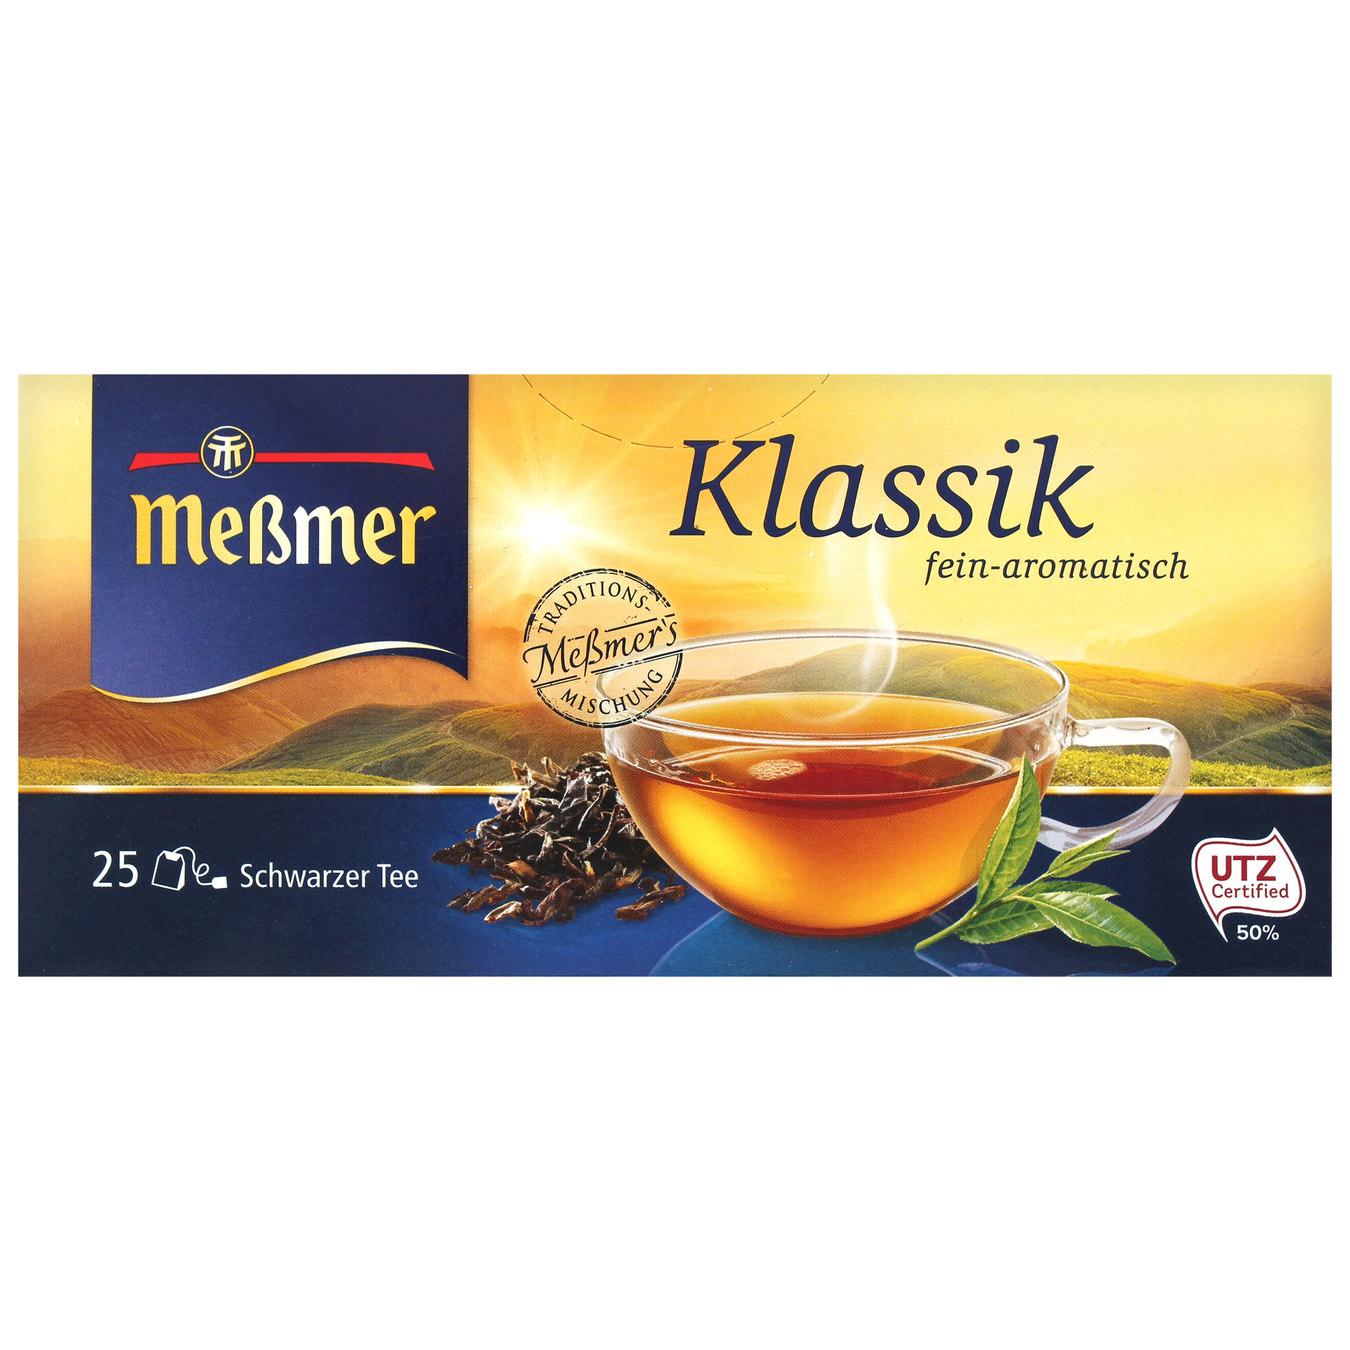 Black tea Messmer Classic 1.75g*25pcs